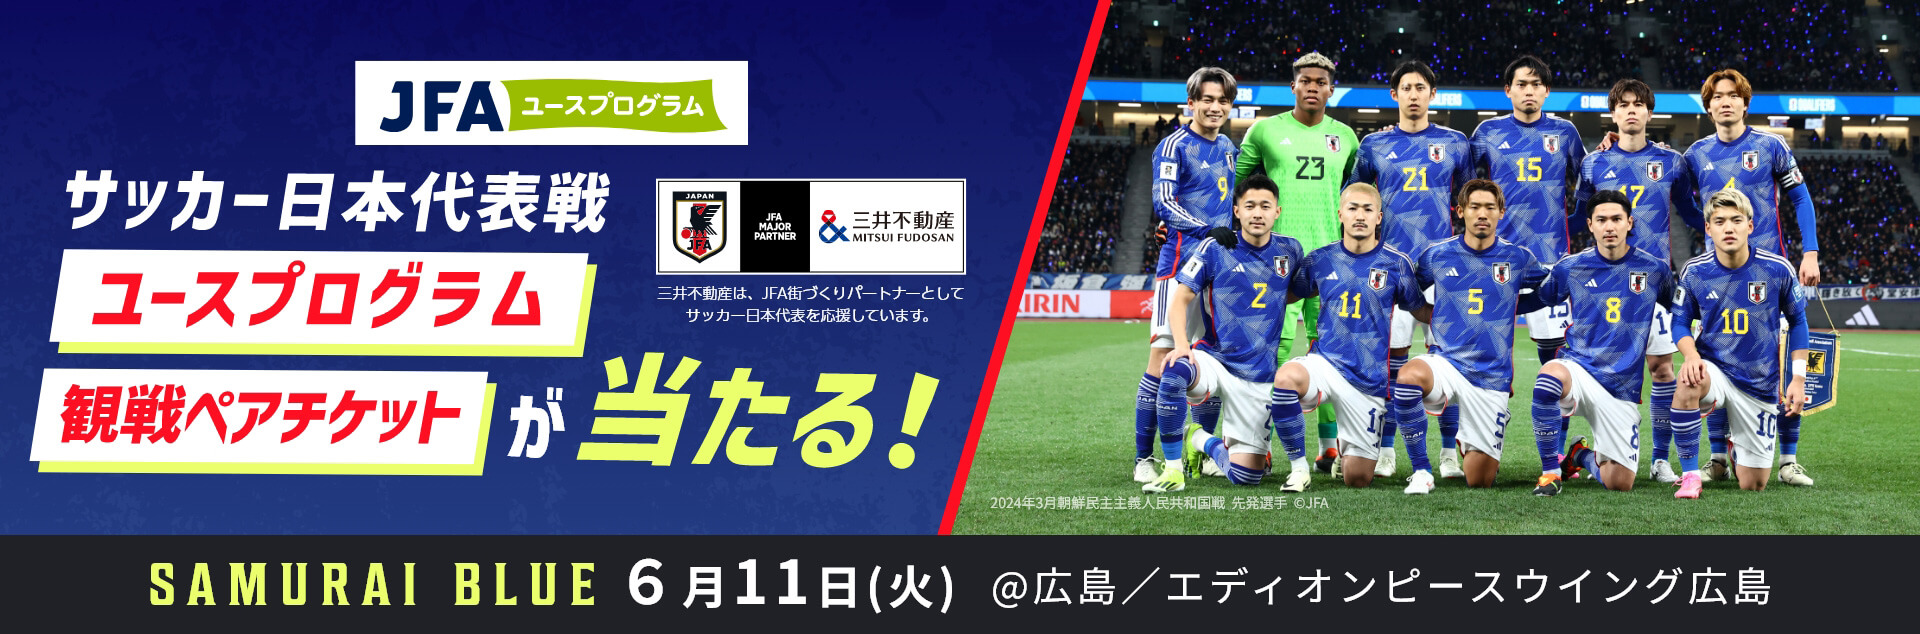 サッカー日本代表戦ユースプログラム観戦ペアチケットが当たる! 三井不動産は、JFA街づくりパートナーとしてサッカー日本代表を応援しています。 SAMURAI BLUE 6月11日(火) ＠広島／エディオンピースウィング広島